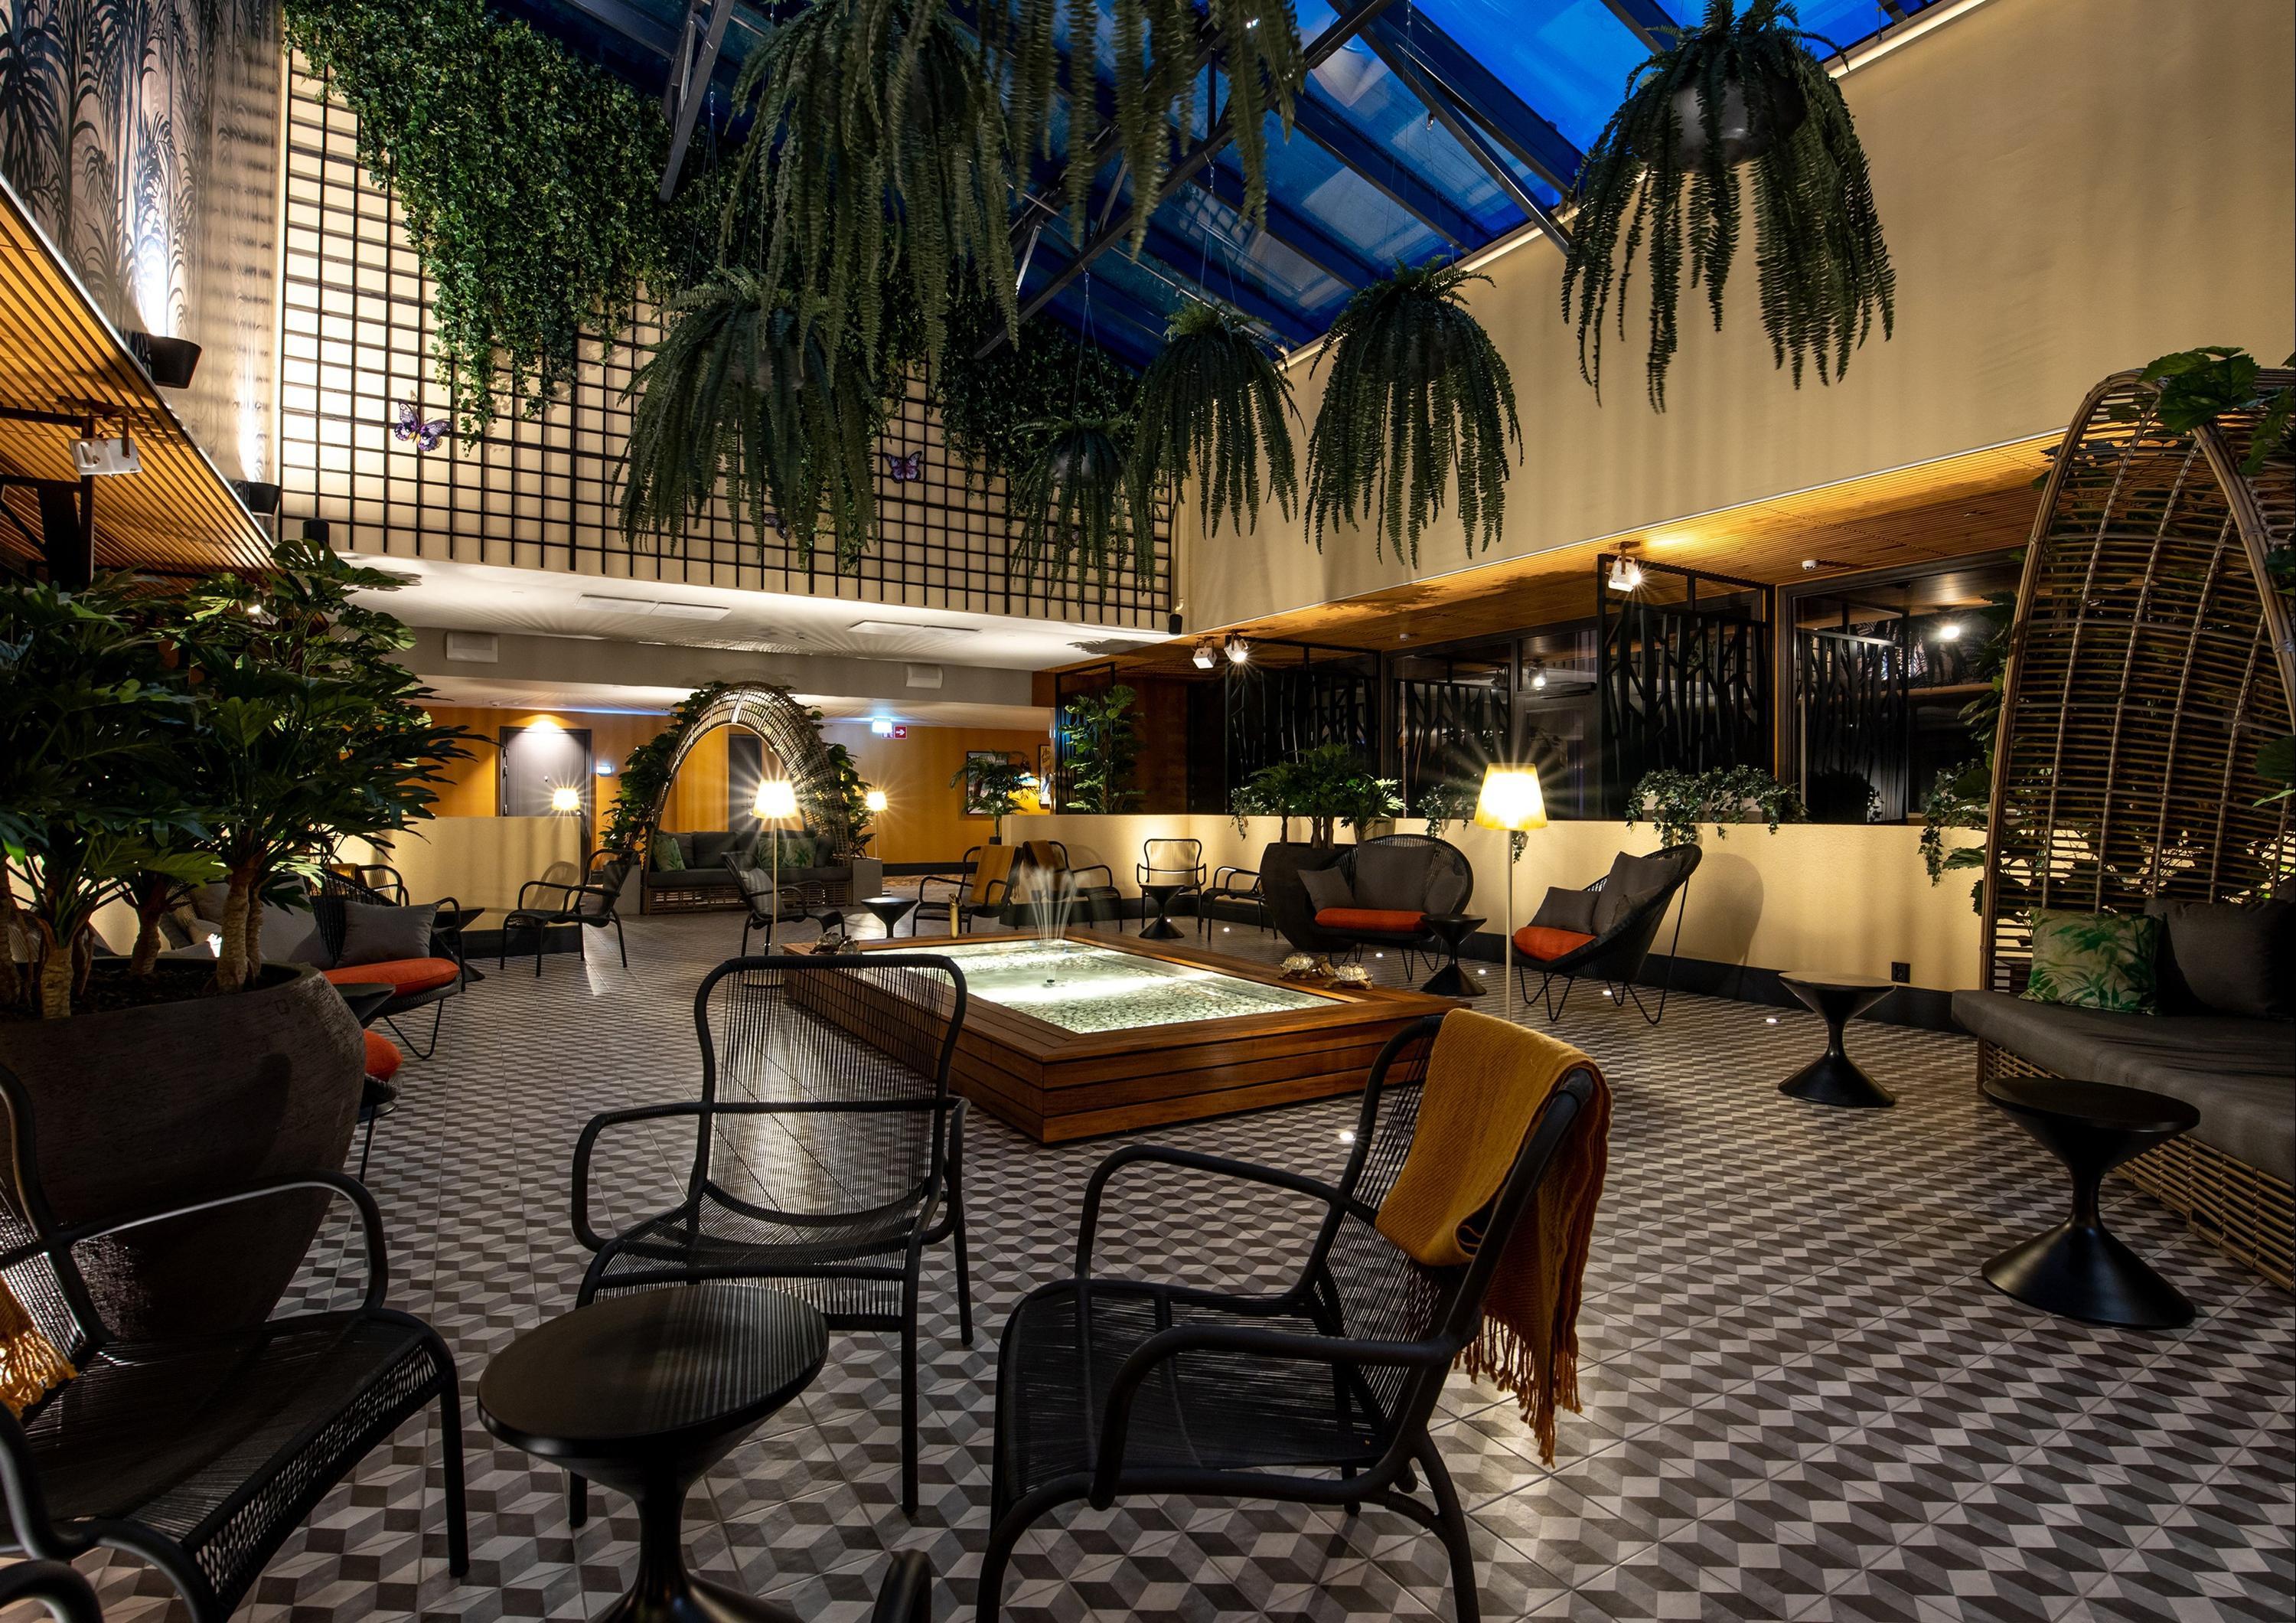 Solo Sokos Hotel Lahden Seurahuone in Lahti, Finland from $139: Deals,  Reviews, Photos | momondo